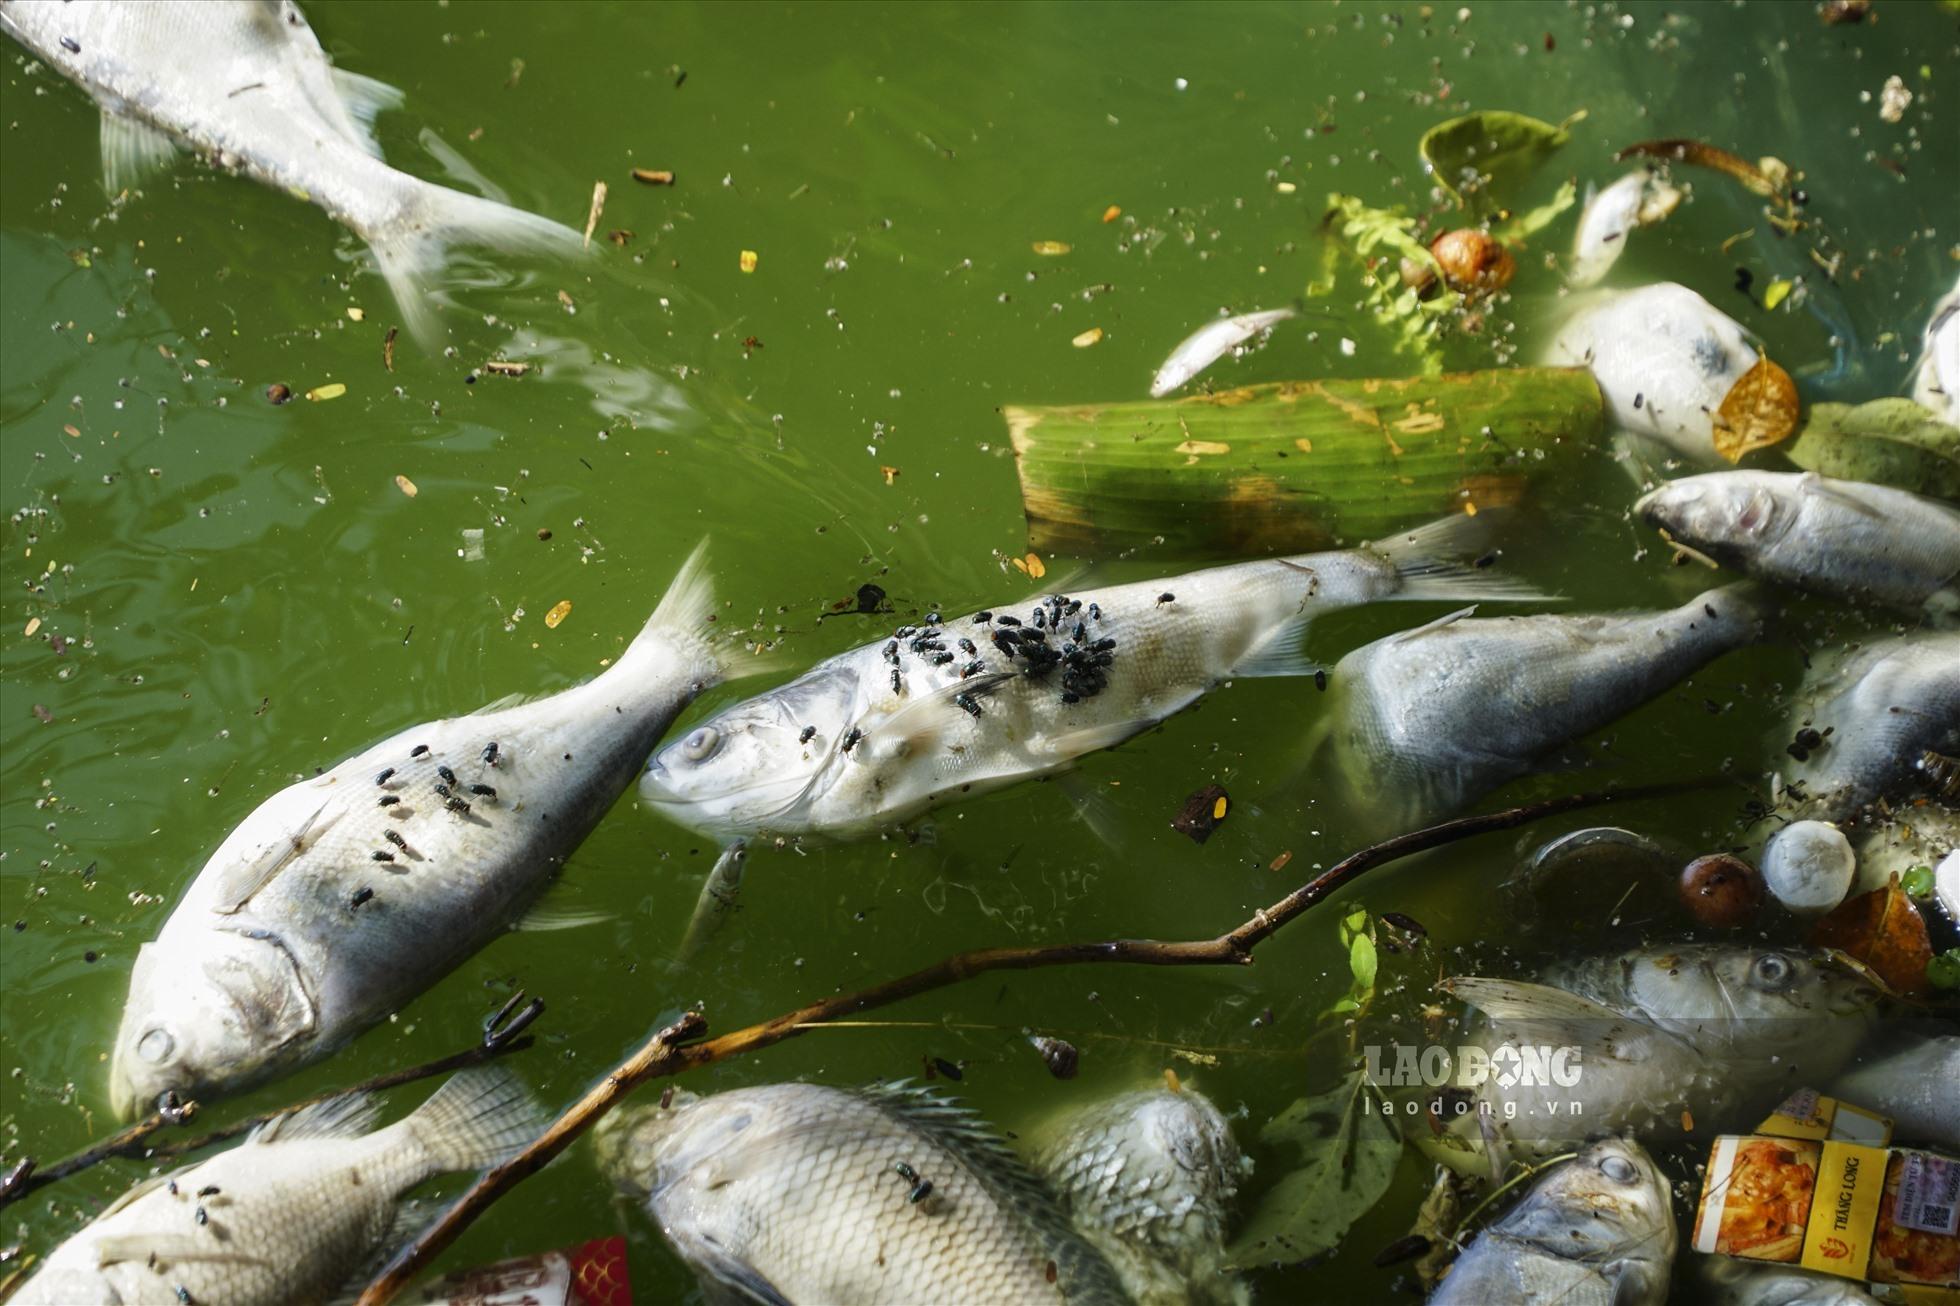 Cá chết hàng loạt ở hồ Tây: Chưa phát hiện việc đầu độc hay nước ô nhiễm